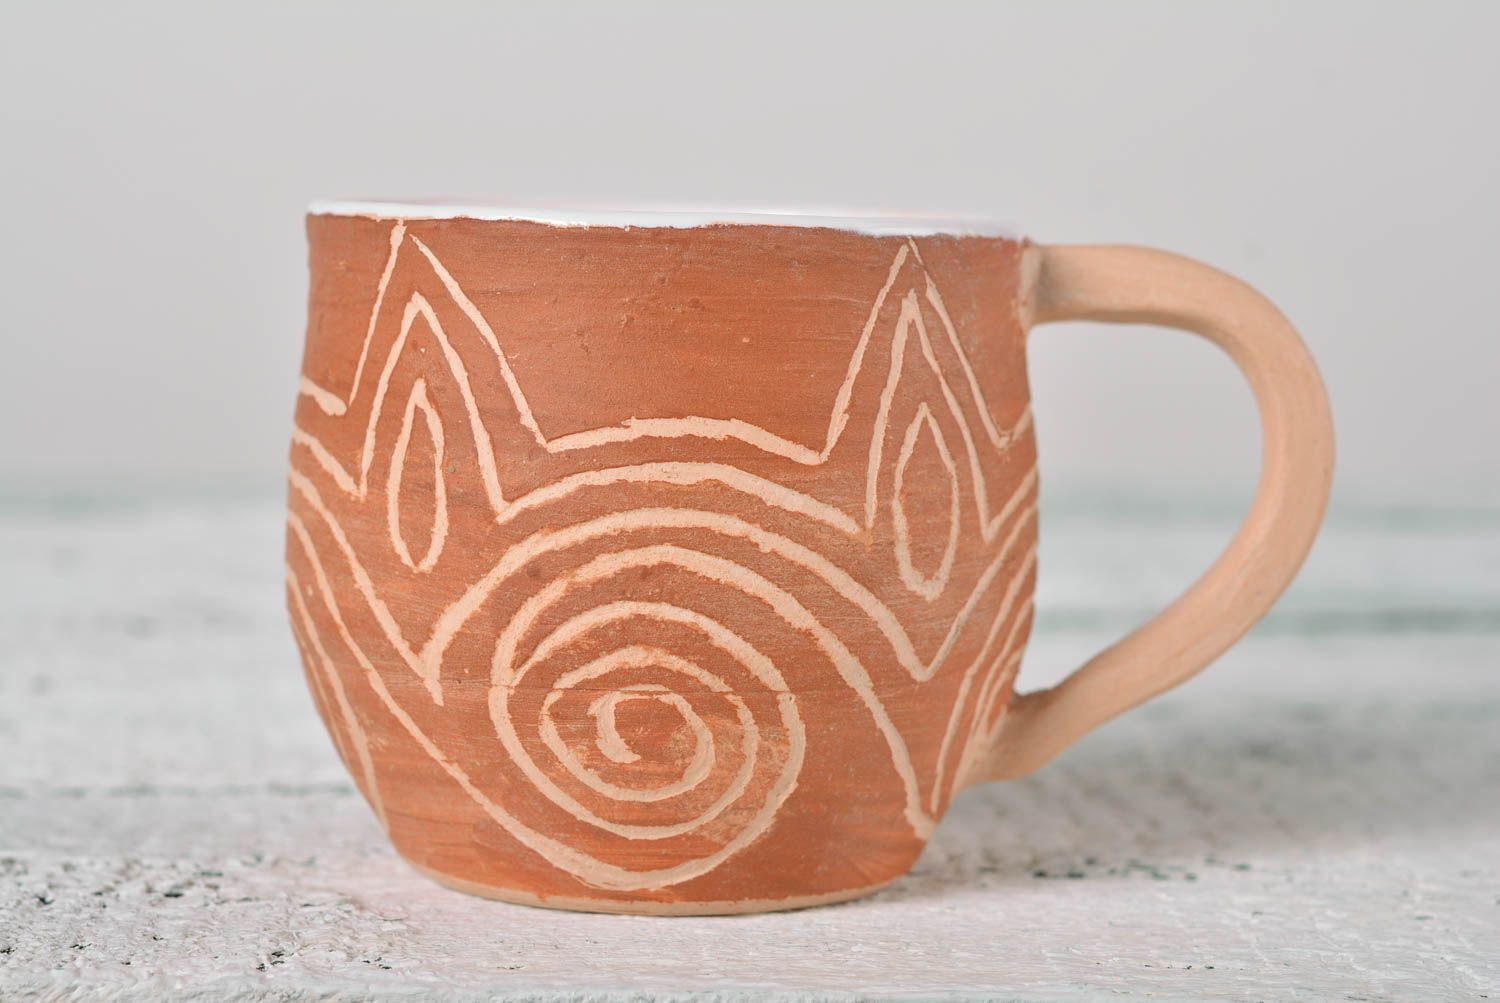 Глиняная чашка ручной работы чайная чашка посуда для чая красивая с орнаментом фото 1